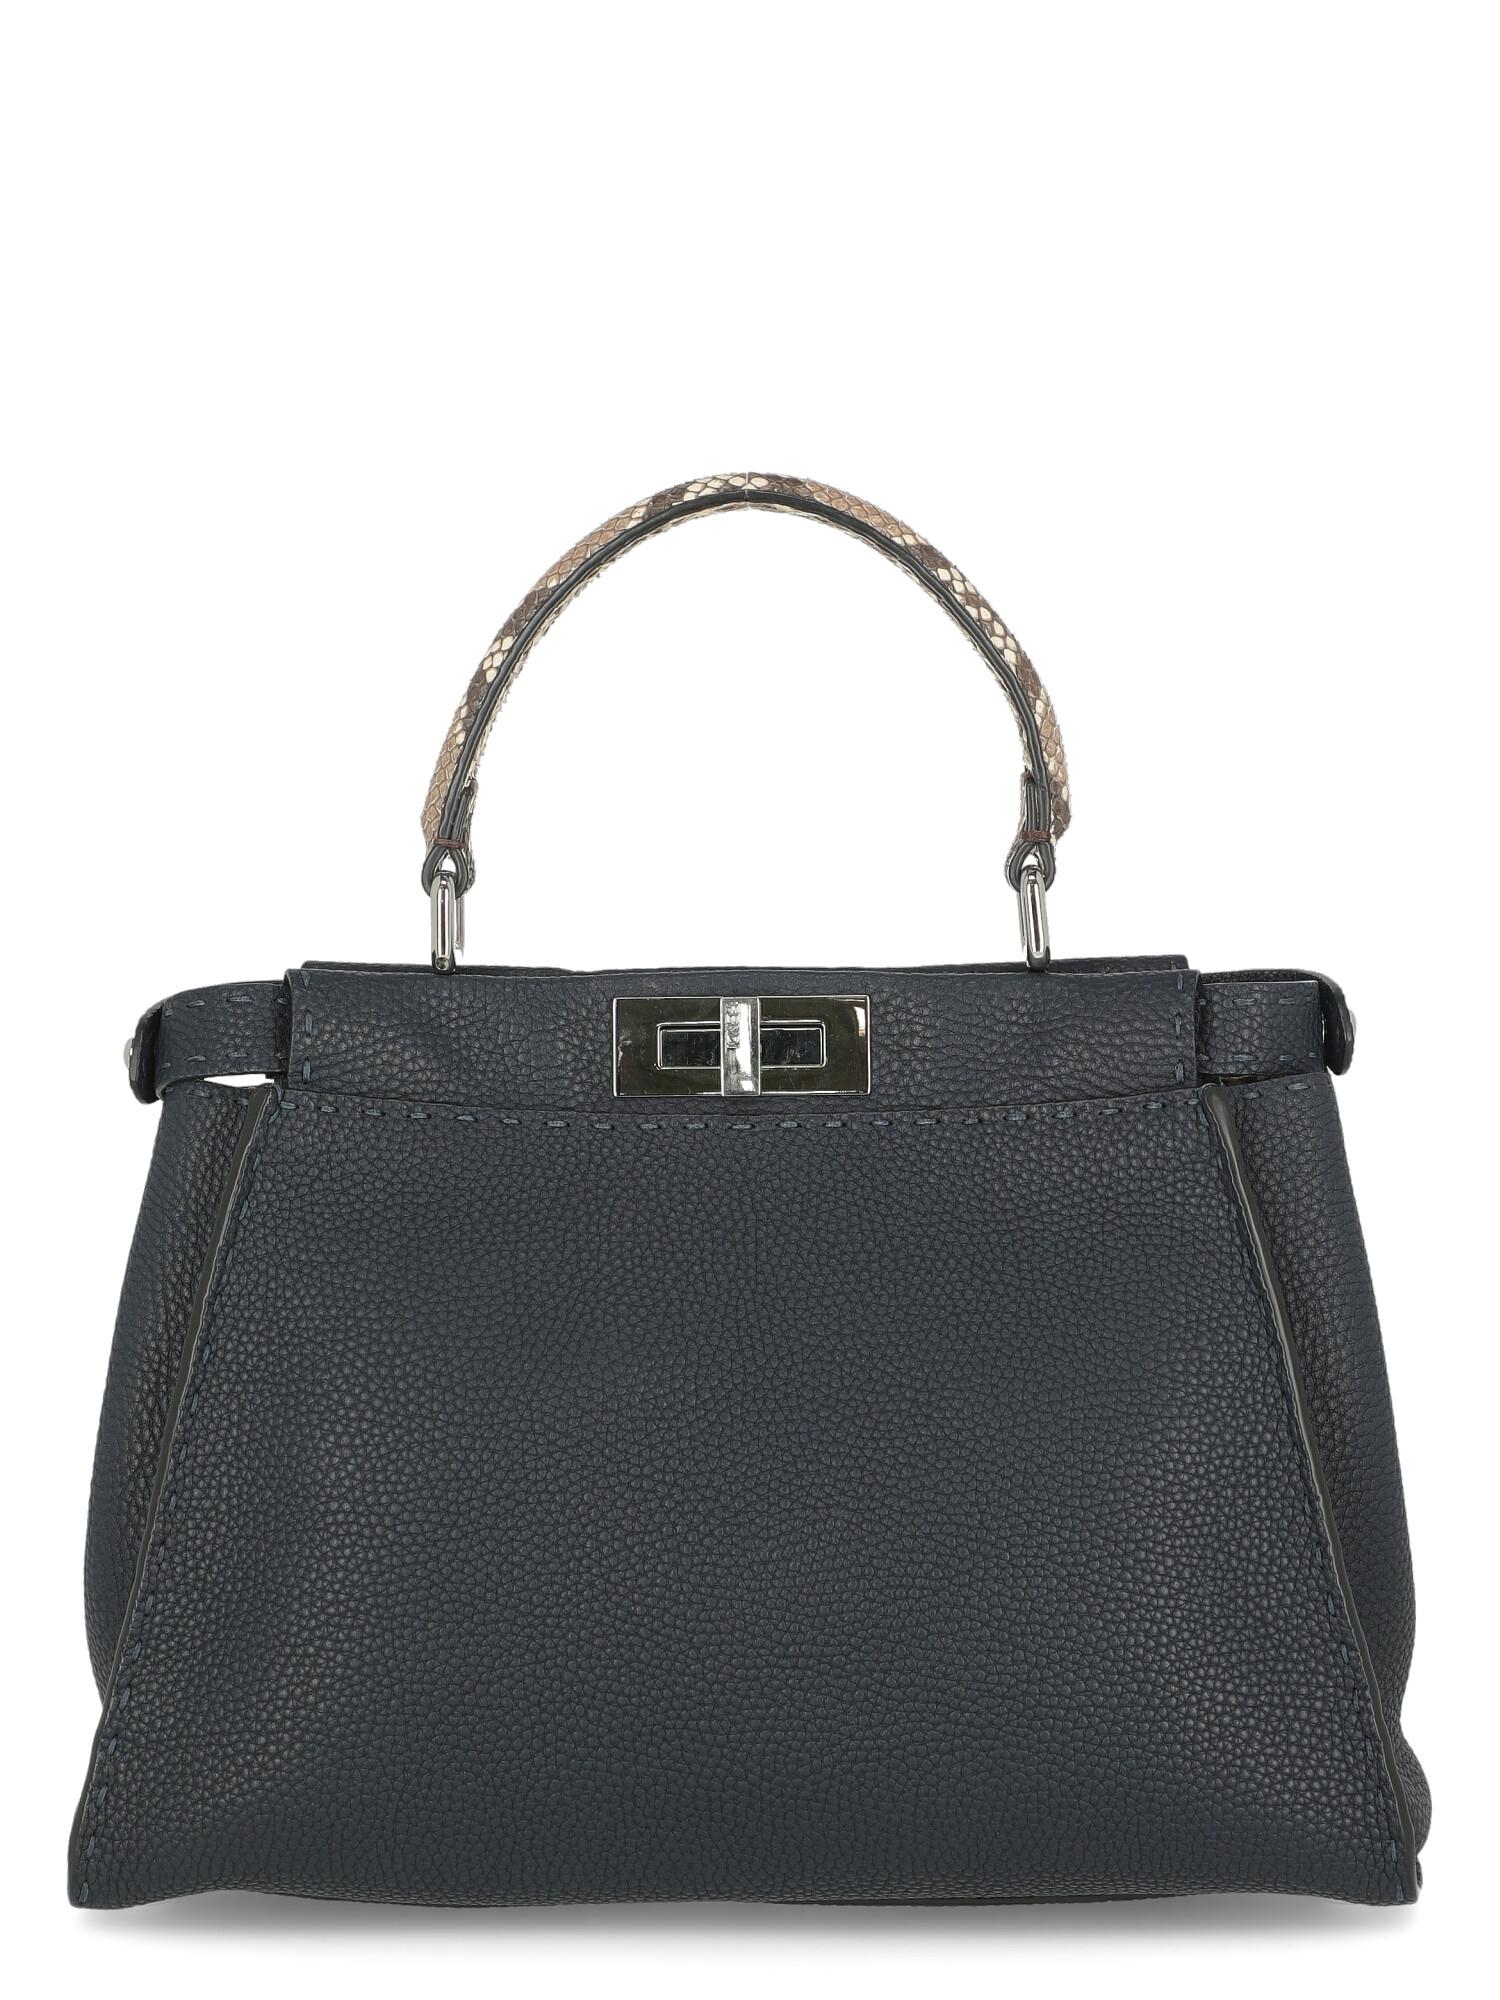 Fendi Women's Handbag Peekaboo Beige/Navy Leather In Good Condition For Sale In Milan, IT